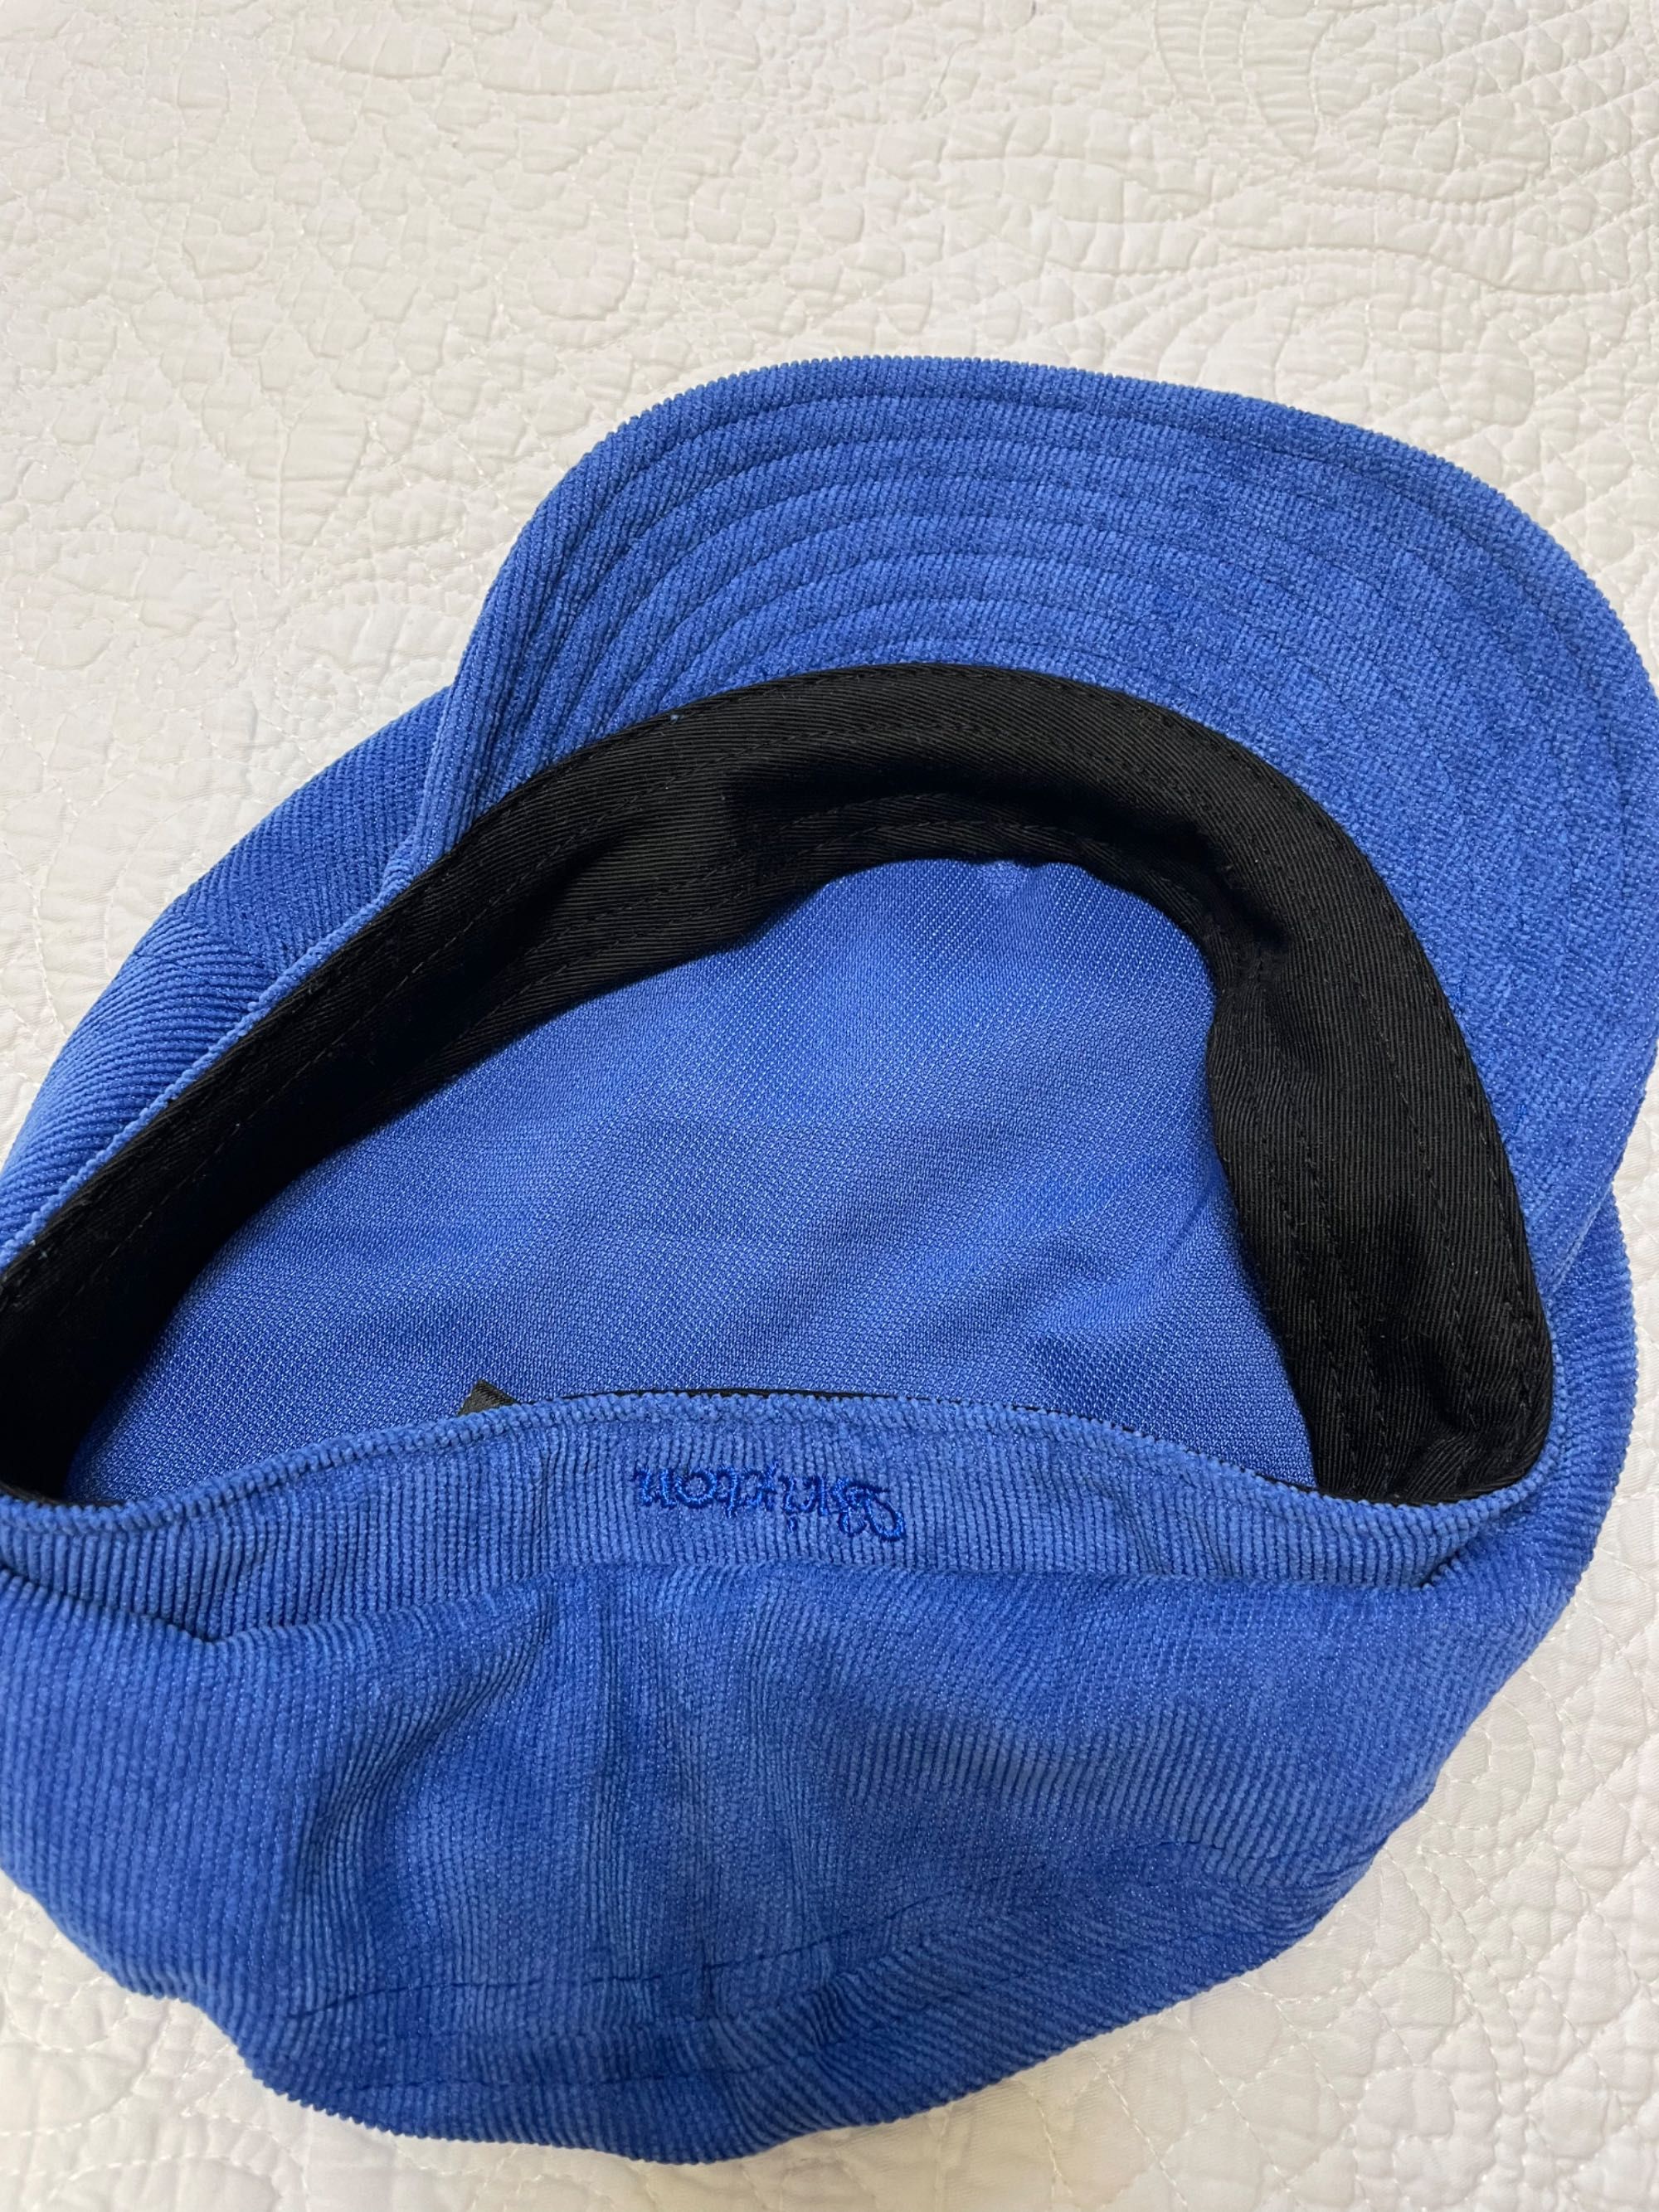 Стильная кепка из вельвета яркого синего цвета от Brixton(США), 56 р-р